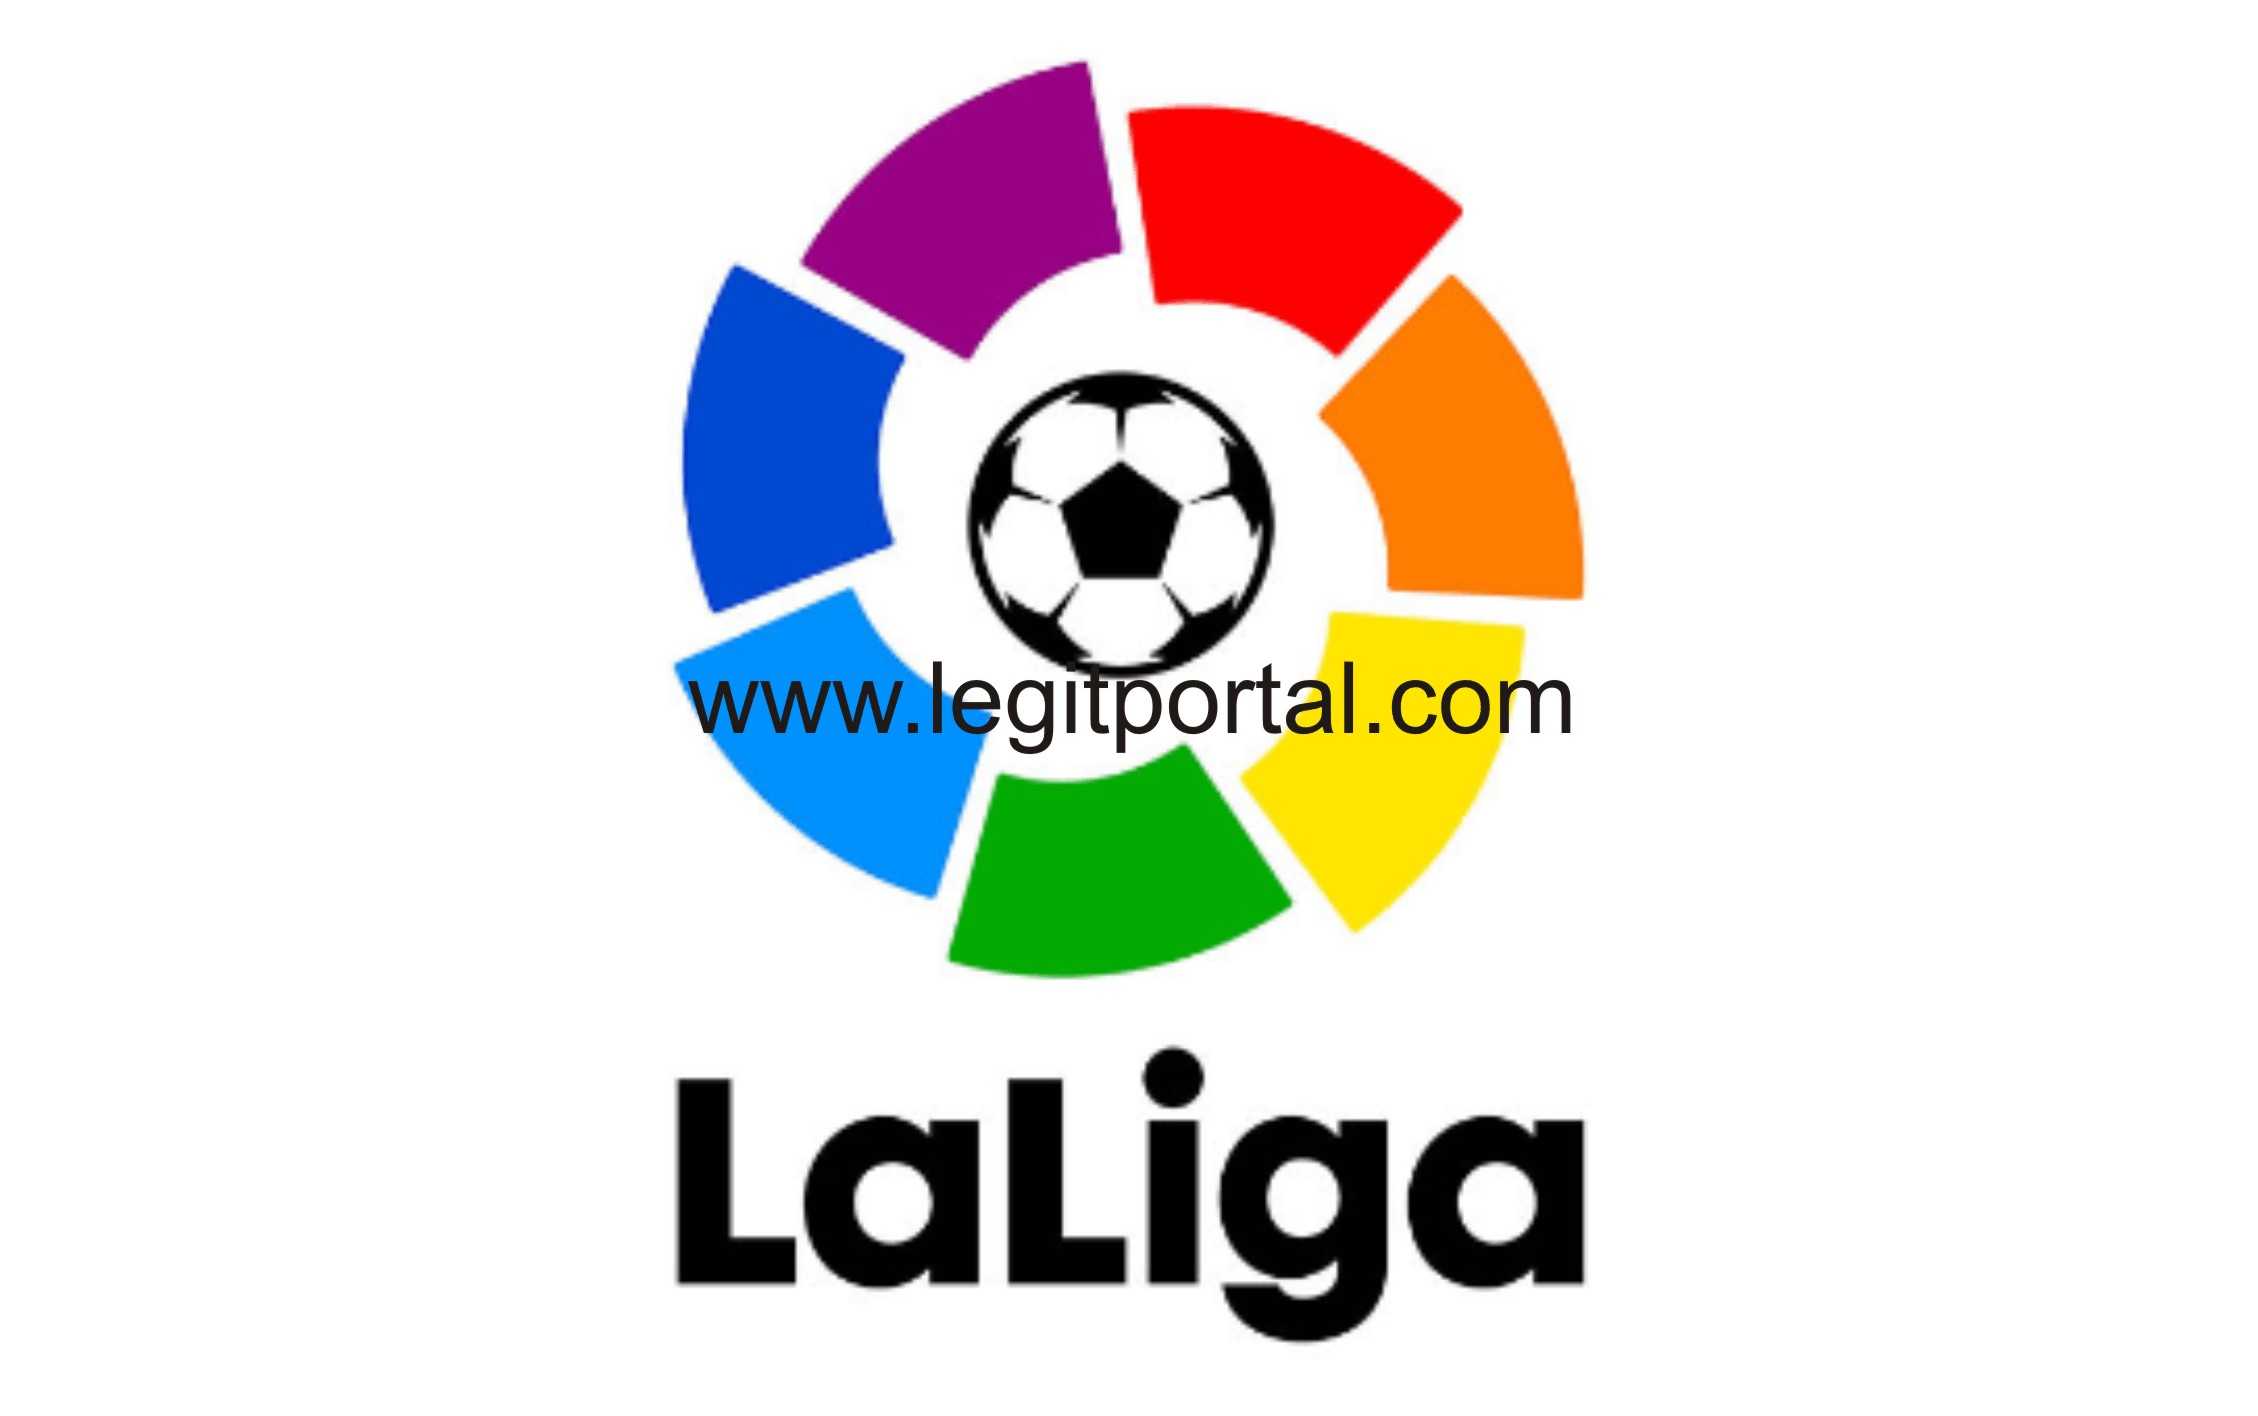 Spanish La Liga Highest Goal Scorer 2019/2020 | Top scorer La Liga, Spain